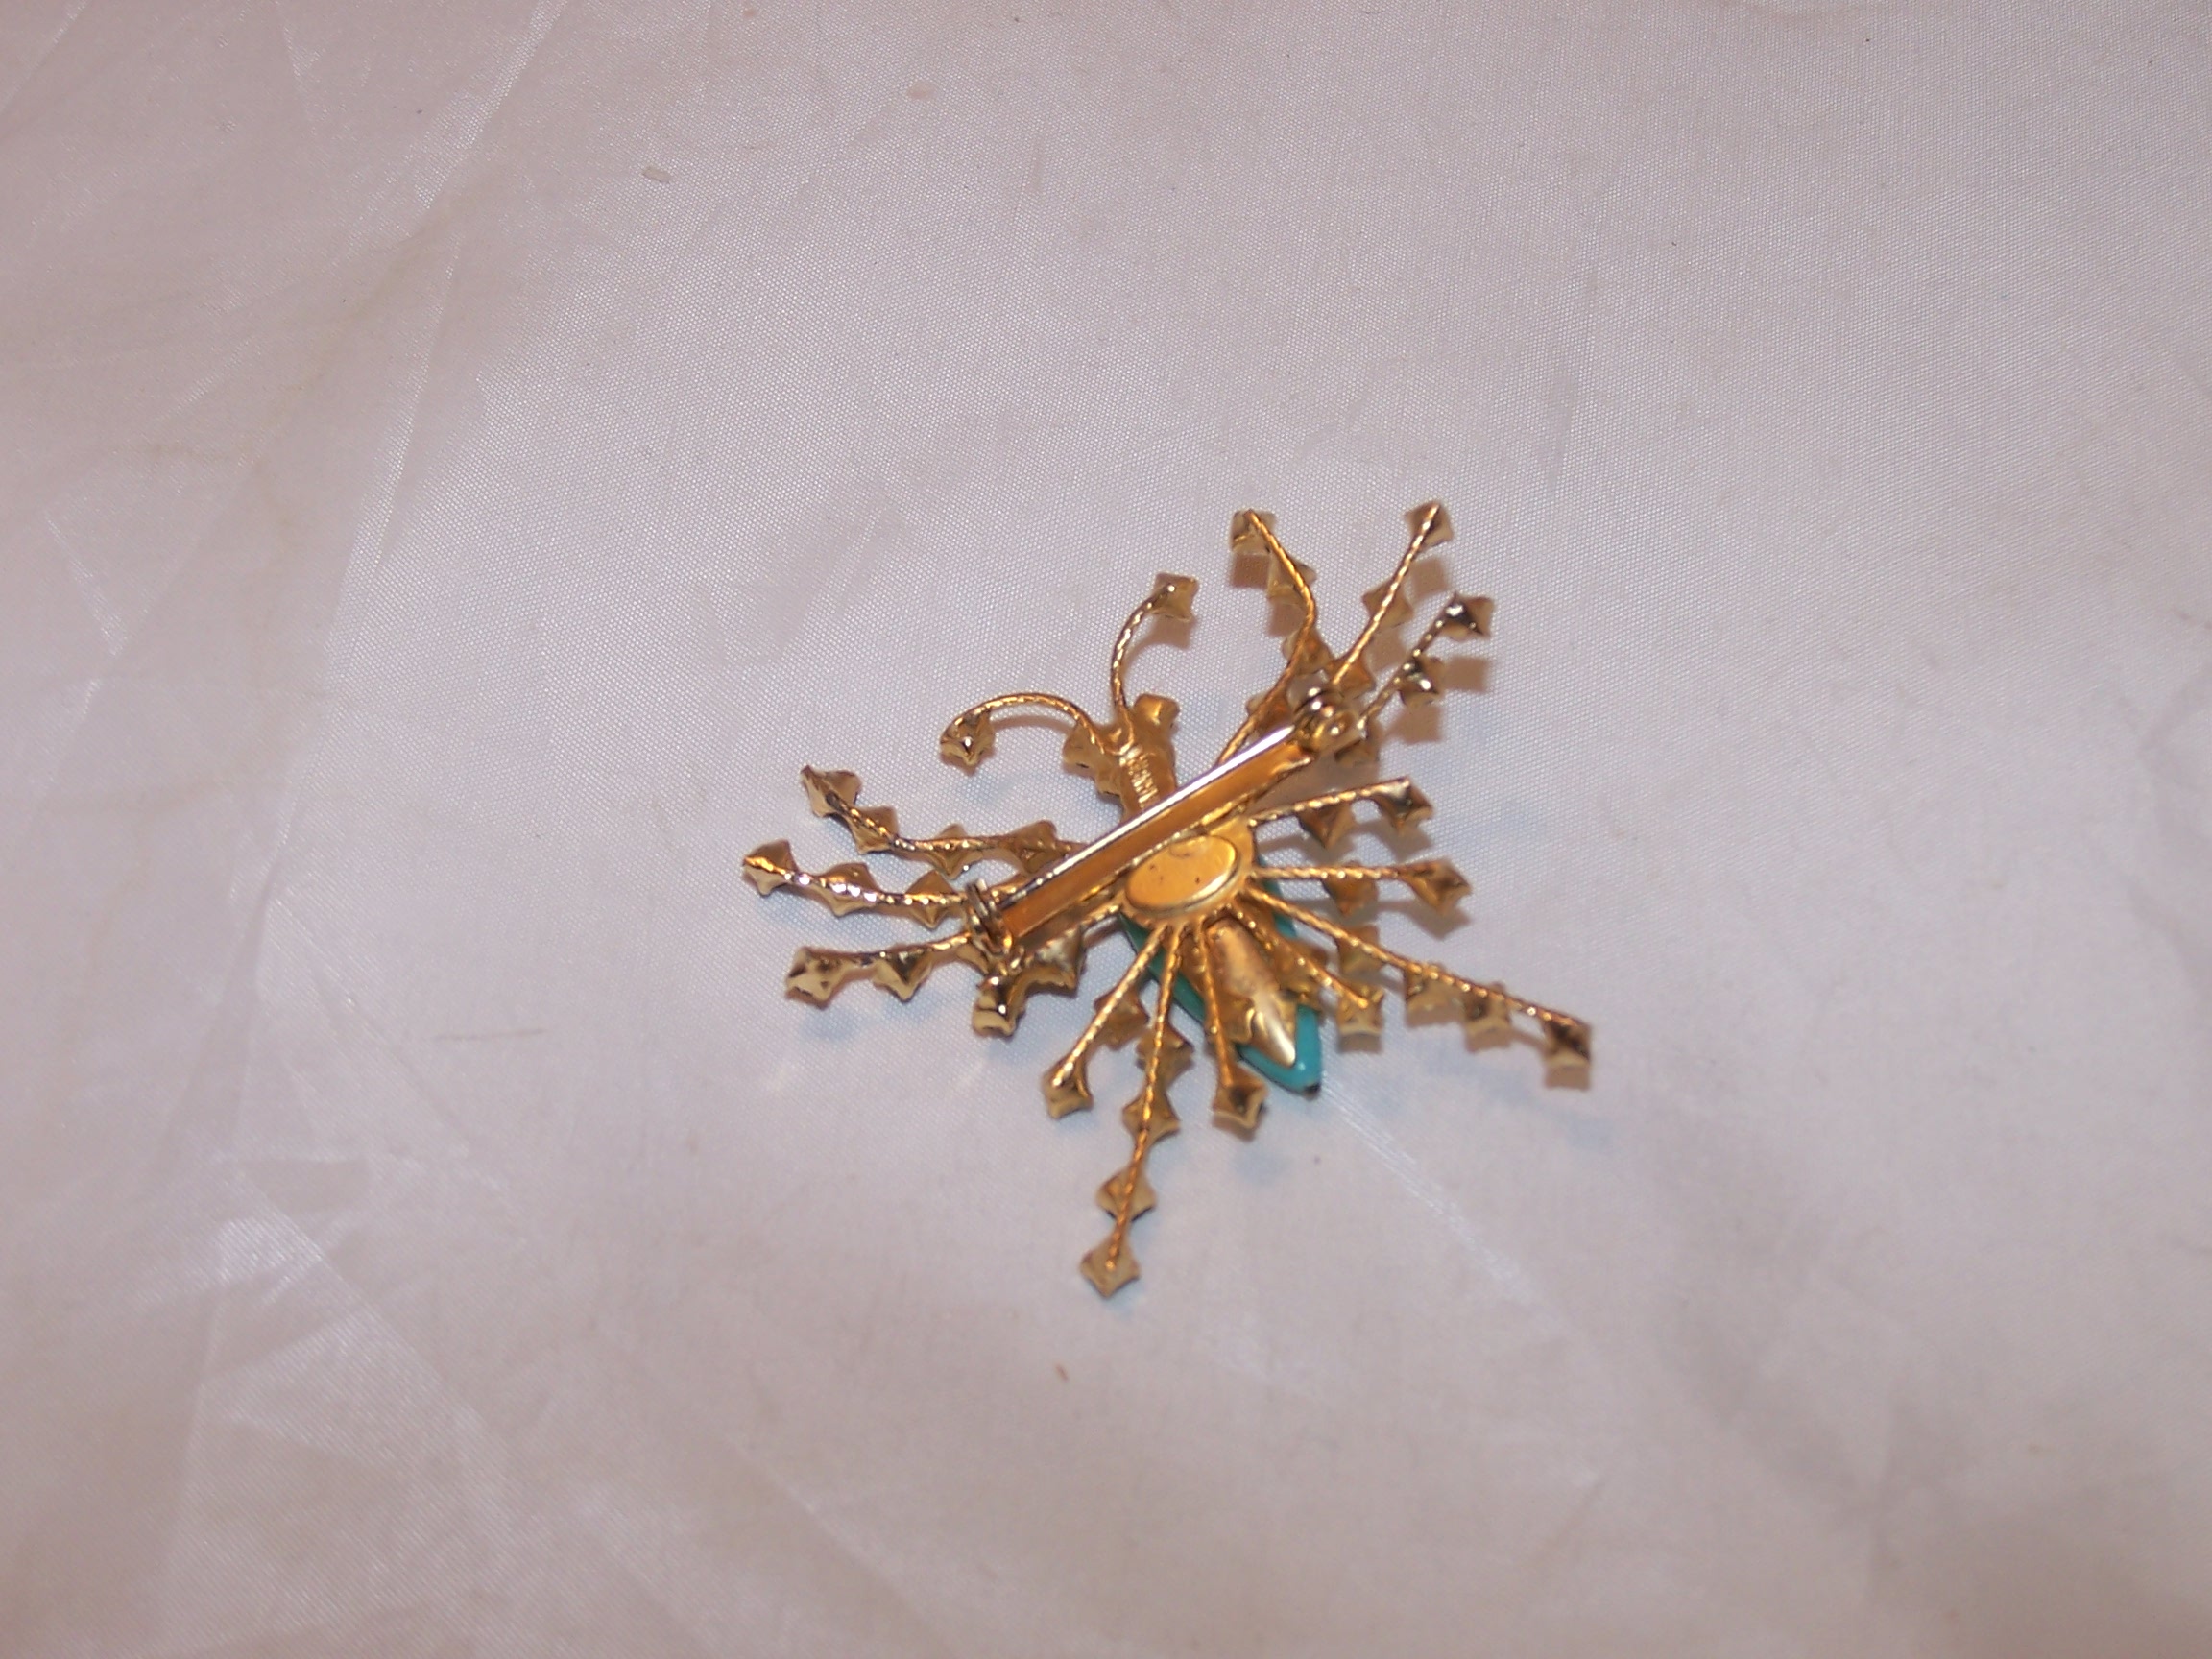 Image 3 of Joesph Warner Bug Pin, Brooch, Prong Set Rhinestones, Vintage